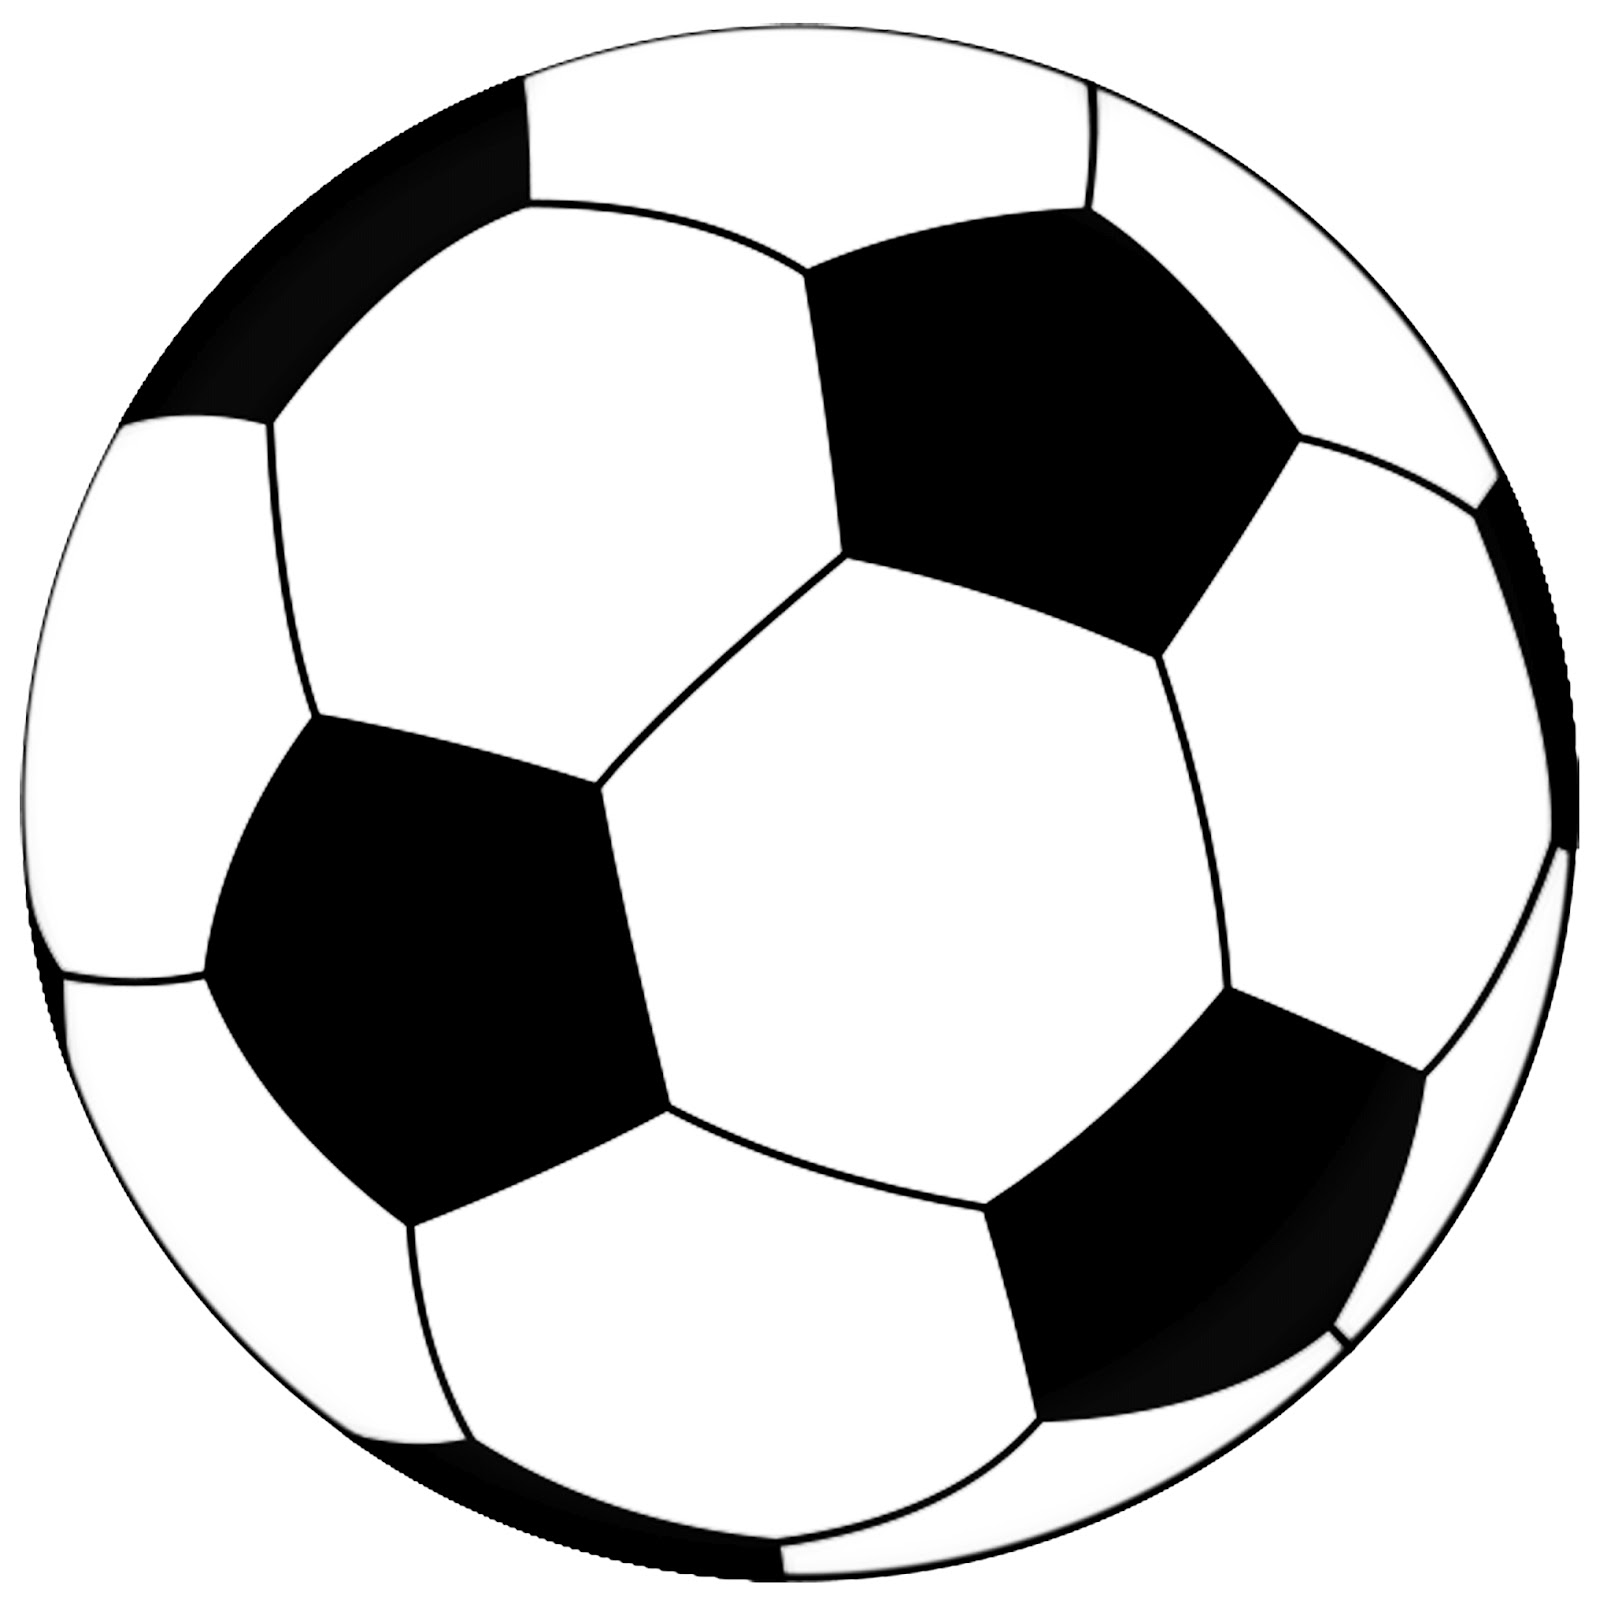 Free Printable Soccer Ball Template - Printable Templates